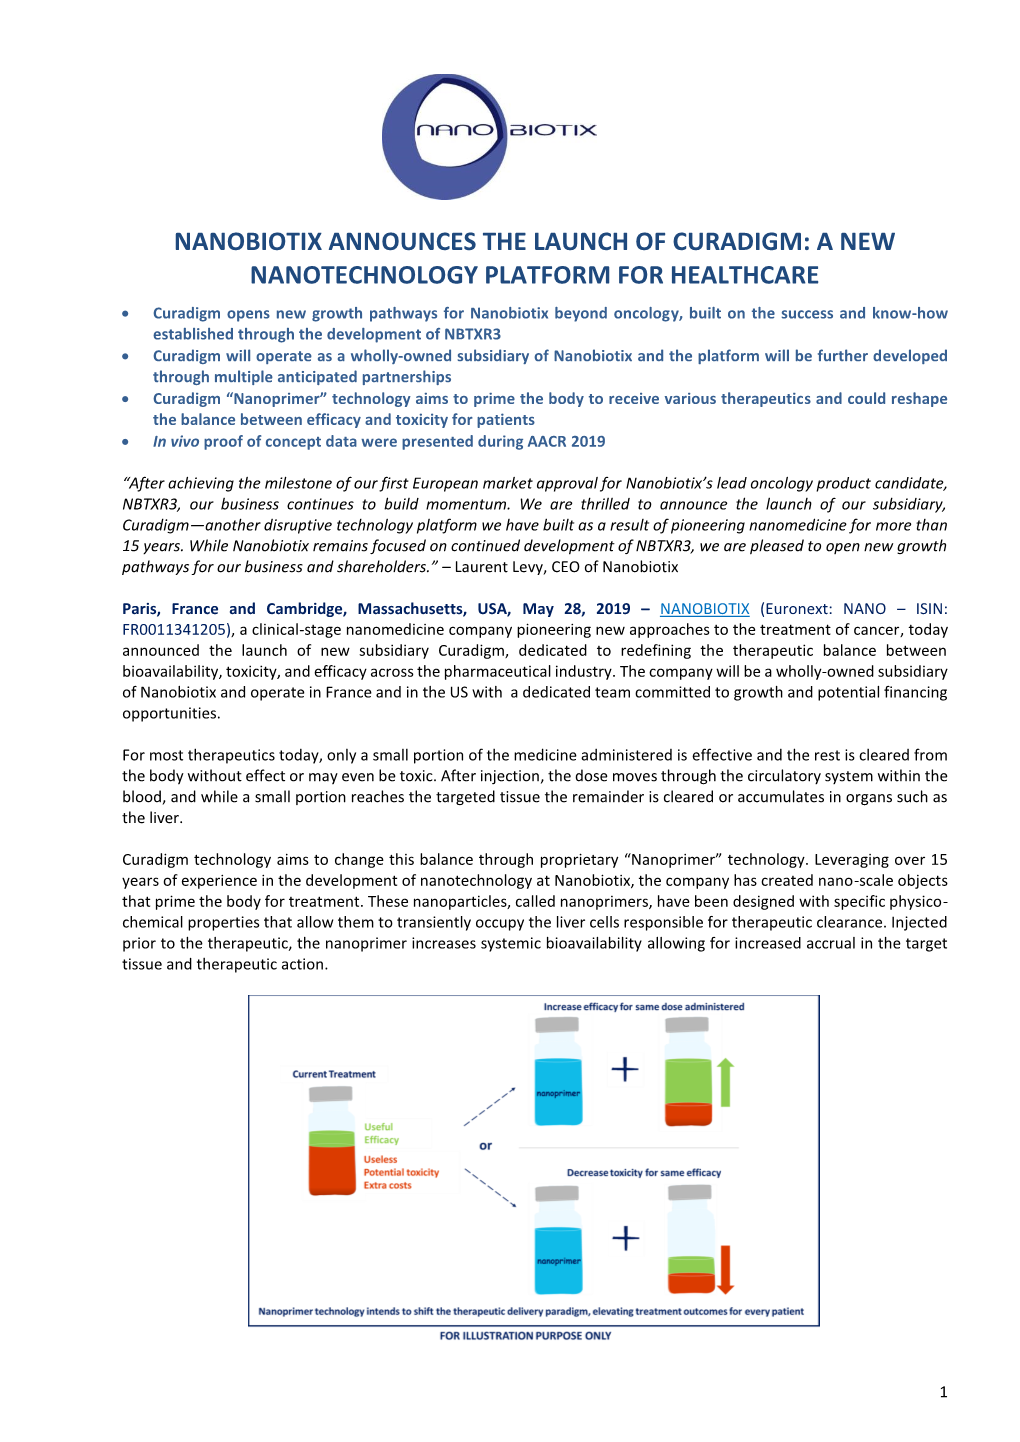 Nanobiotix Announces the Launch of Curadigm: a New